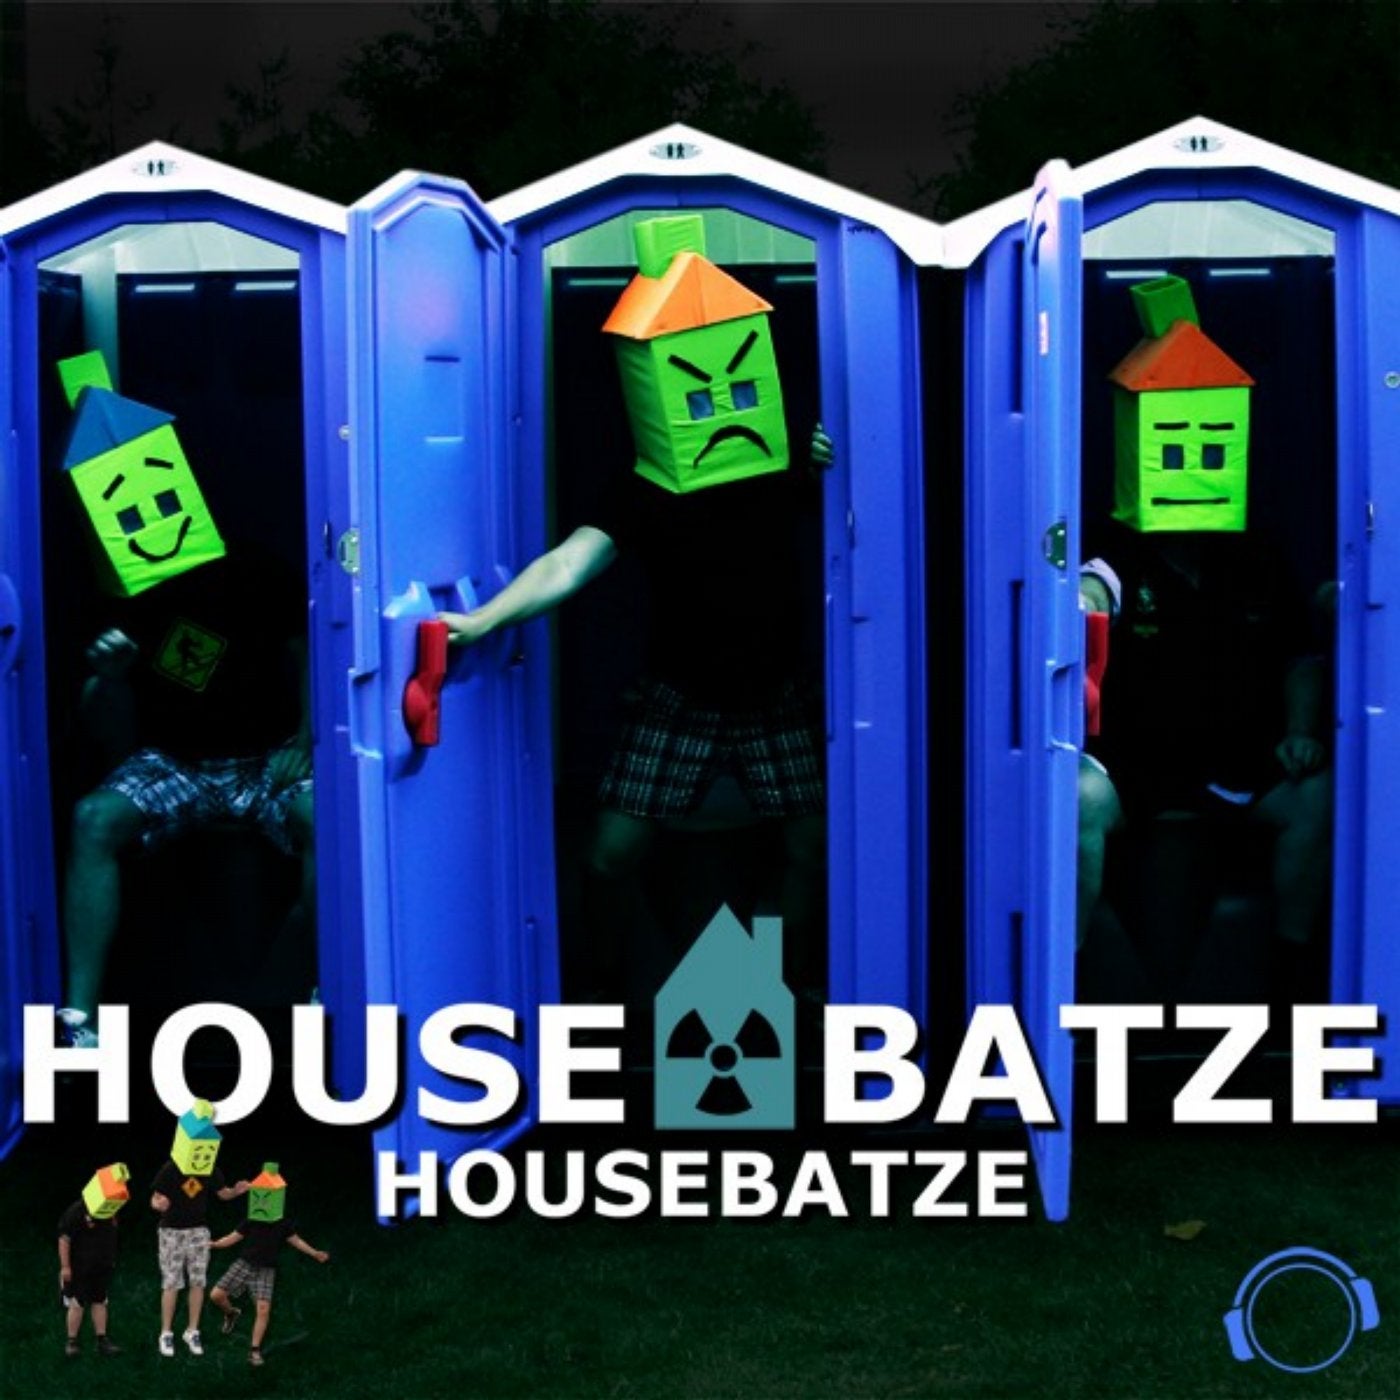 Housebatze